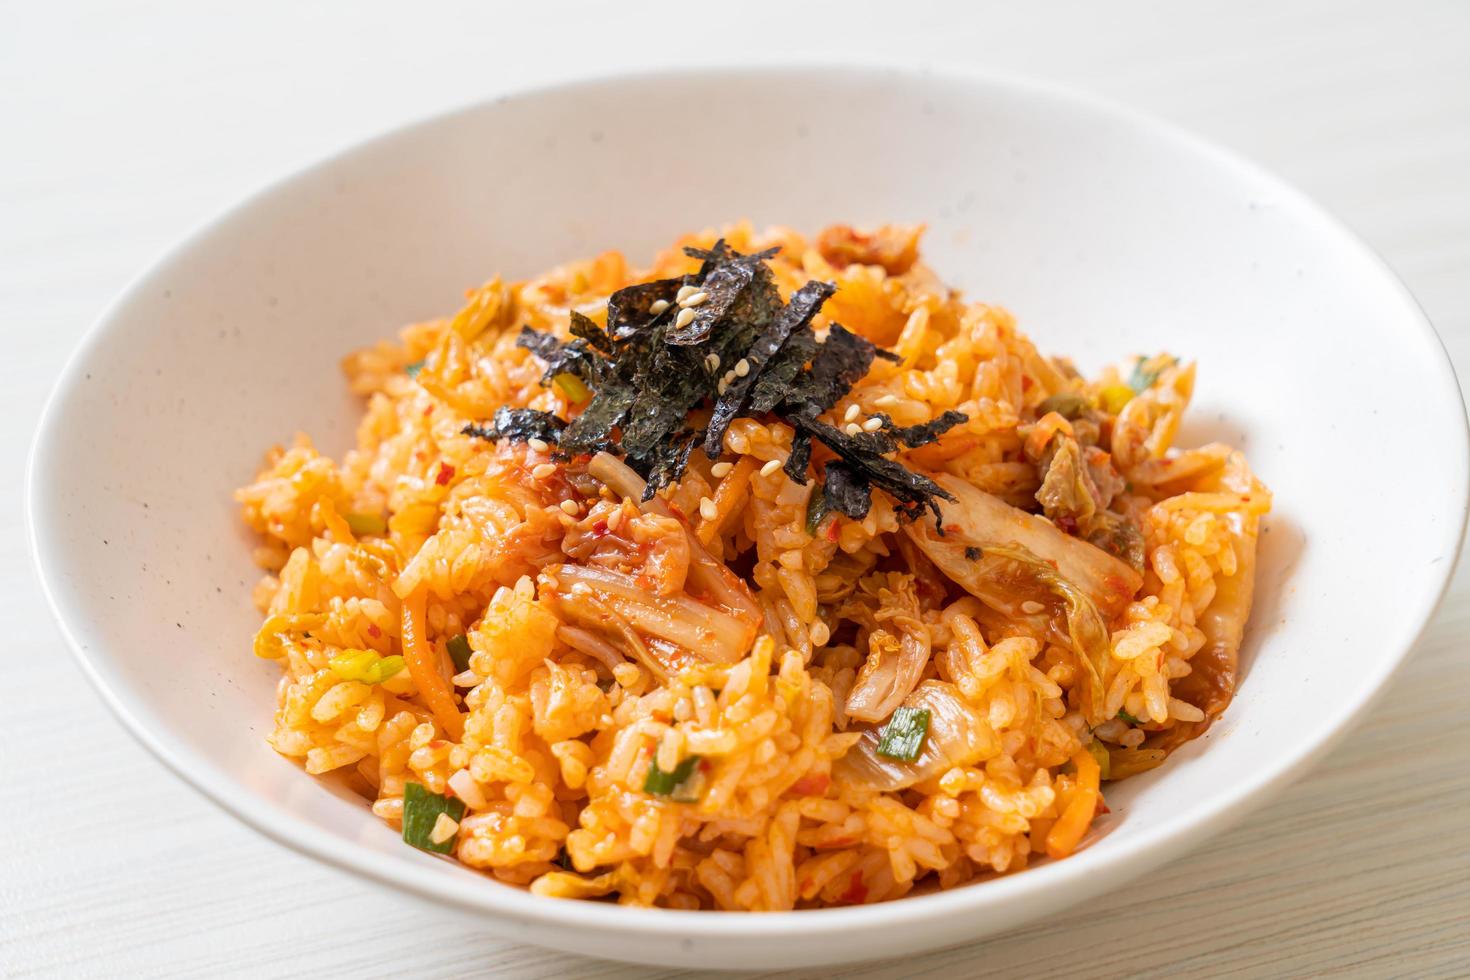 kimchi stekt ris med tång och vit sesam - koreansk matstil foto